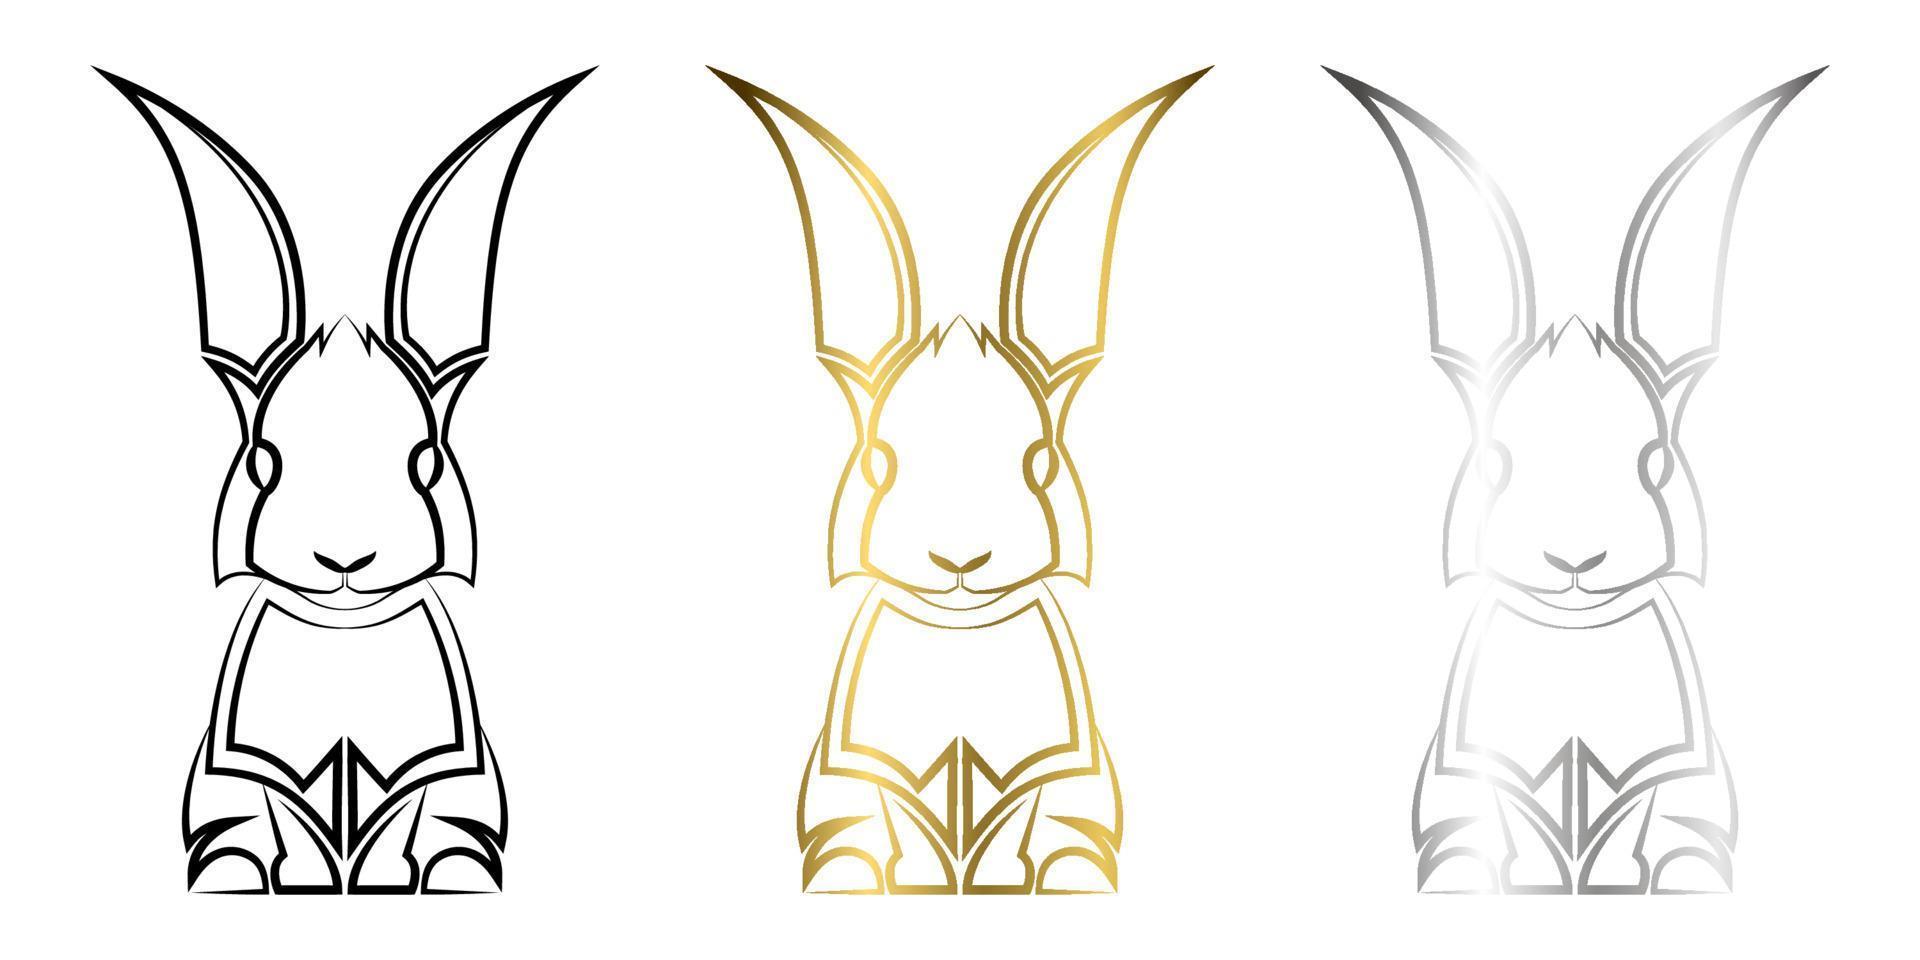 drie kleuren zwart goud en zilver lijntekeningen van konijn goed gebruik voor symbool mascotte pictogram avatar tattoo t-shirt ontwerp logo of elk ontwerp dat u wilt vector